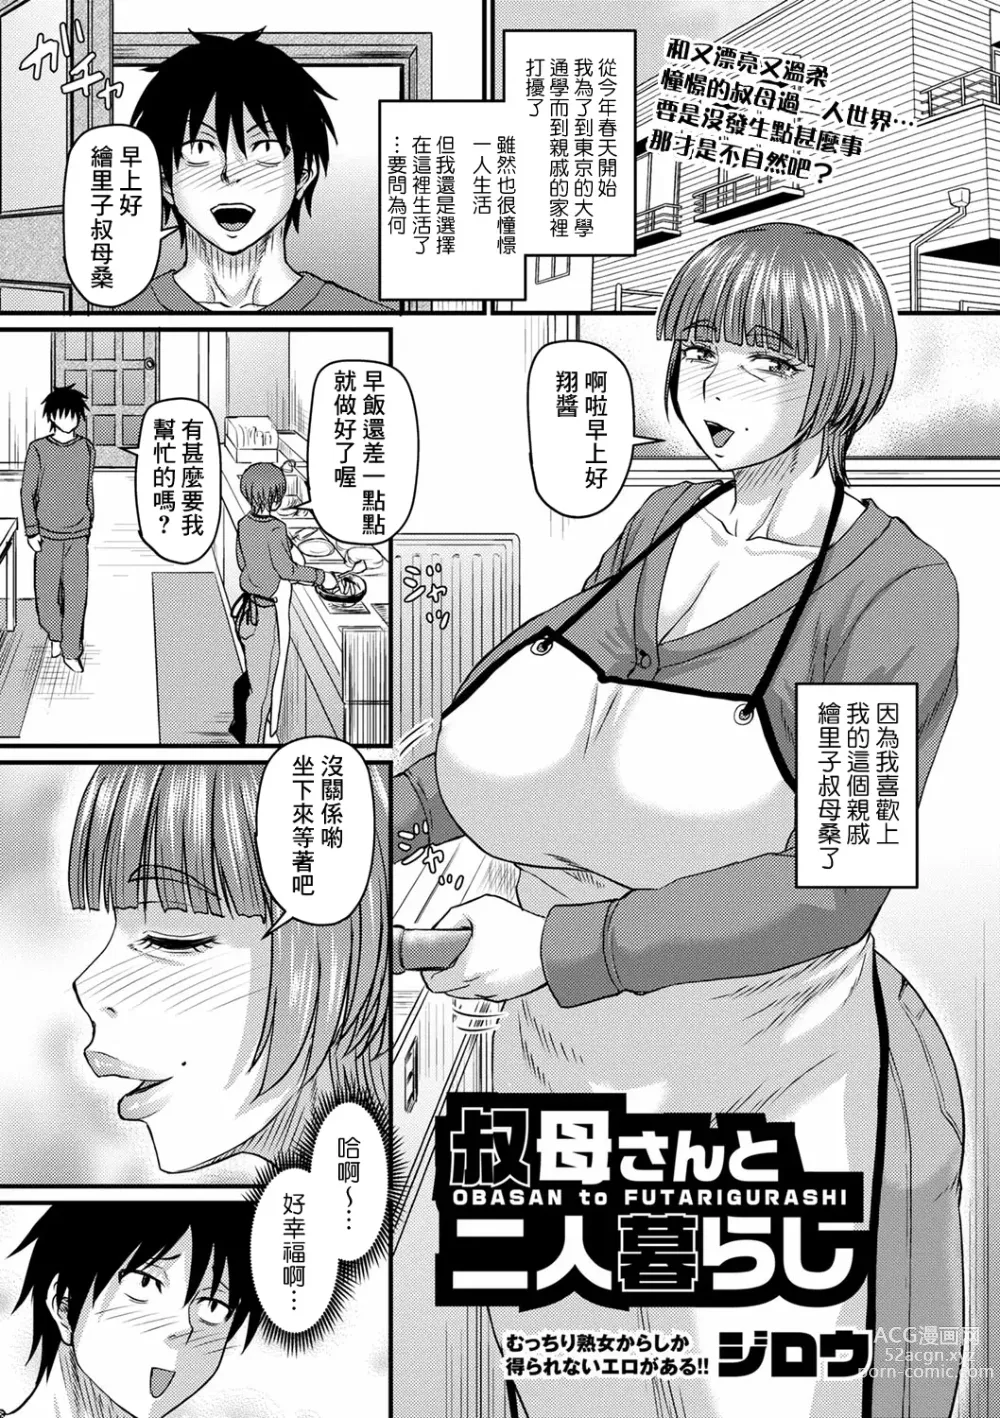 Page 1 of manga Obasan to Futarigurashi